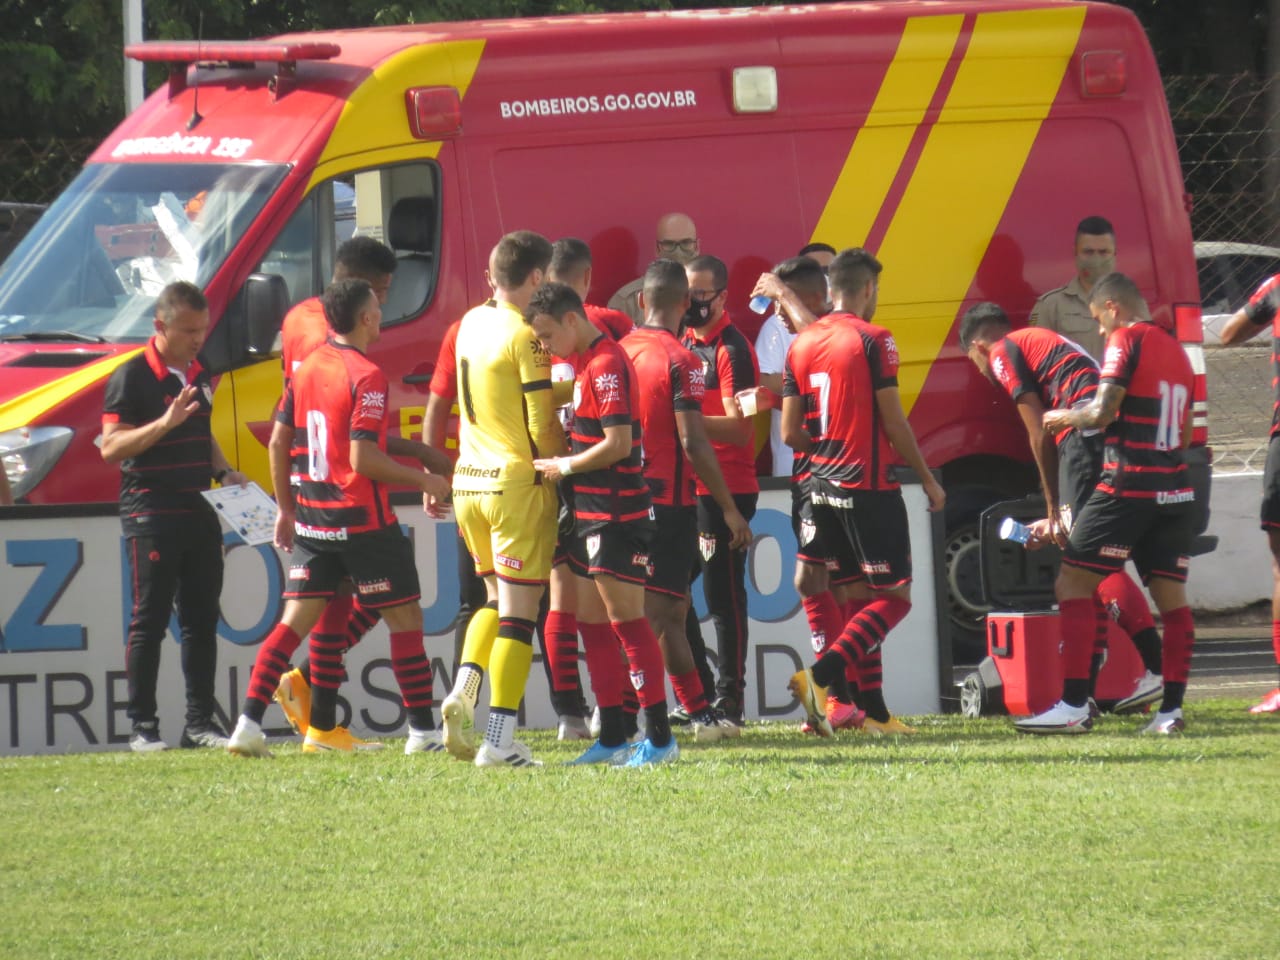 O Atlético-GO derrotou o CRAC por 2 a 0 em sua estreia no Campeonato Goiano